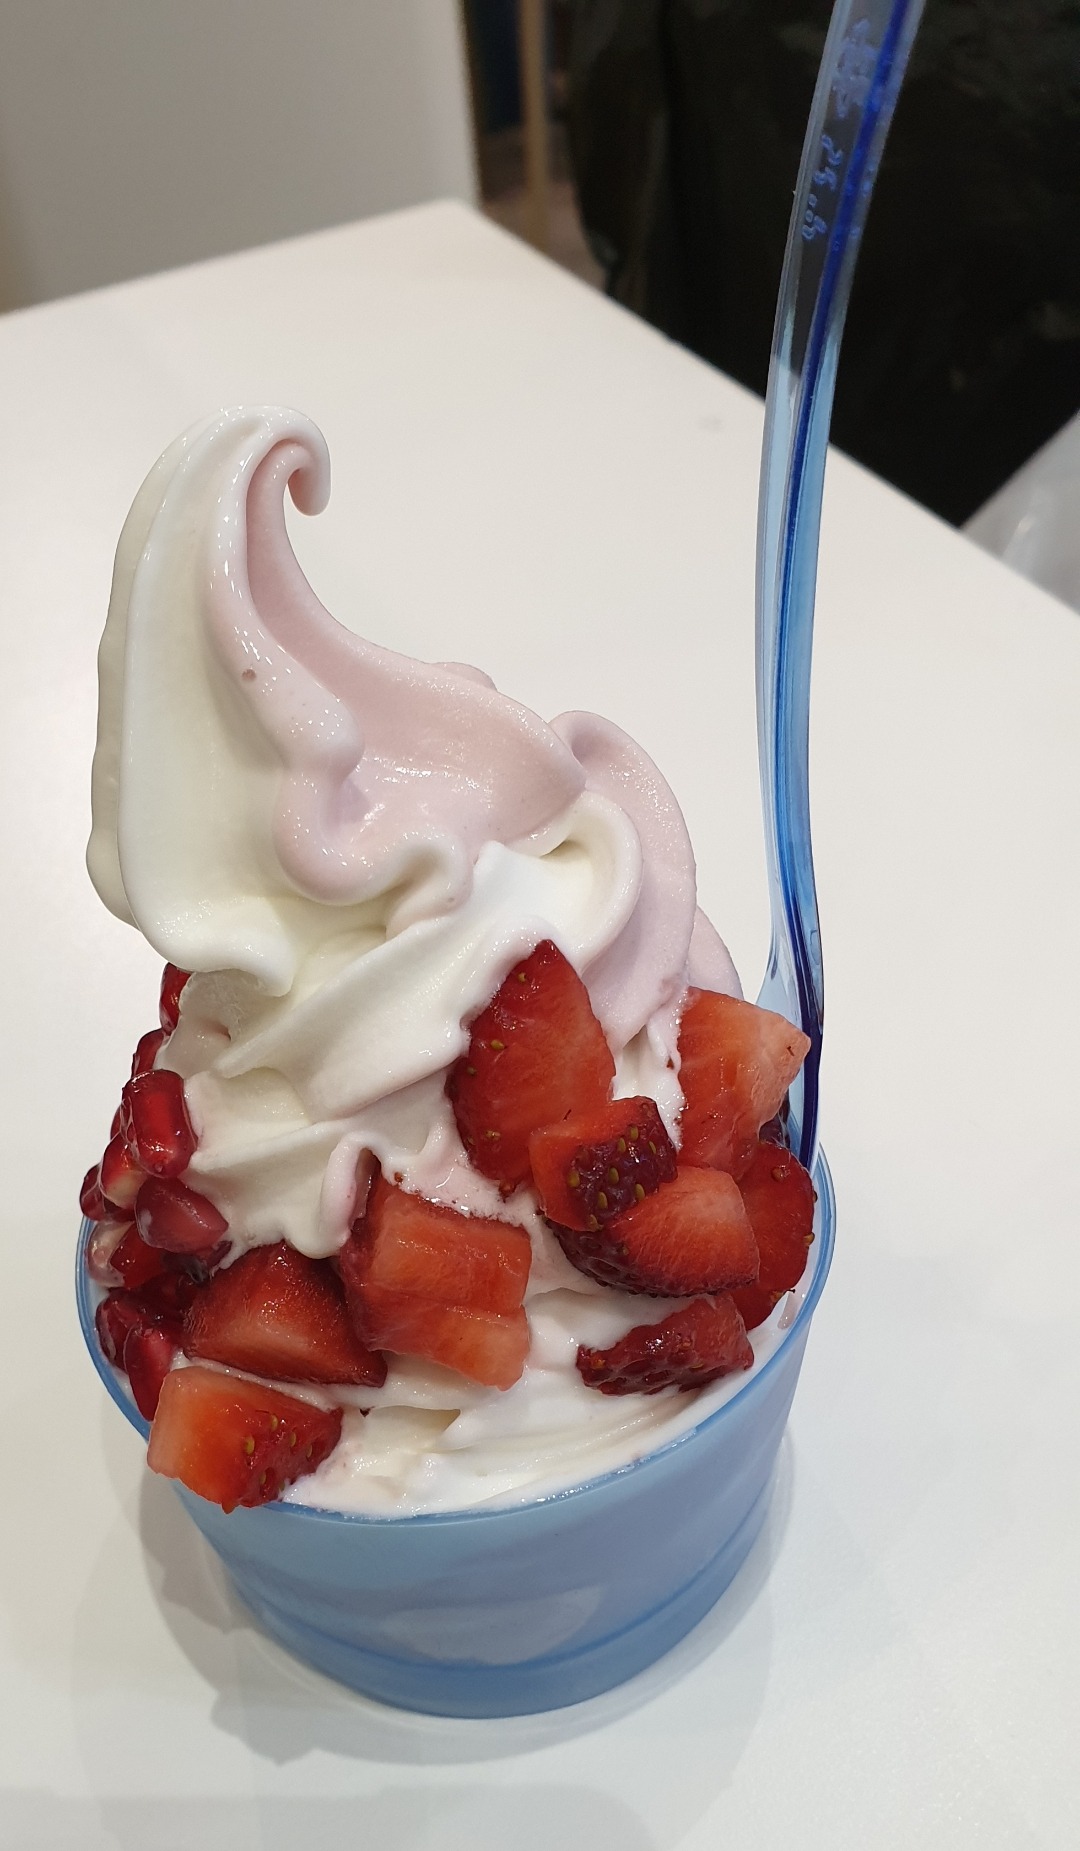 the best yogurt icecream 😋 @ Yogorino - Bahrain